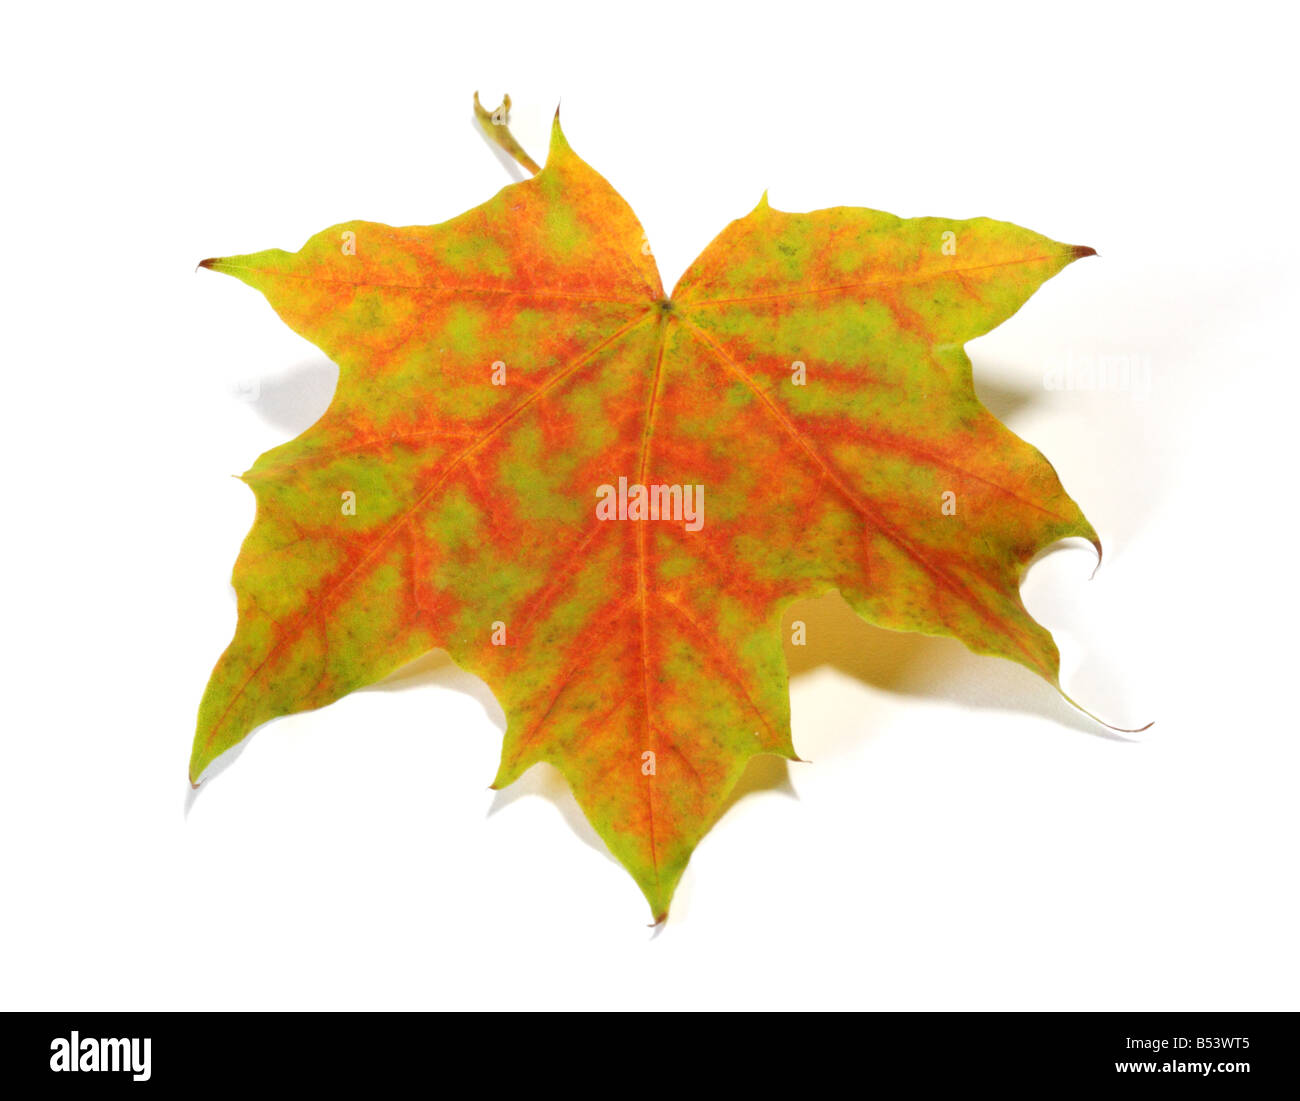 Autumn Maple Leaf (Acer) on white Stock Photo